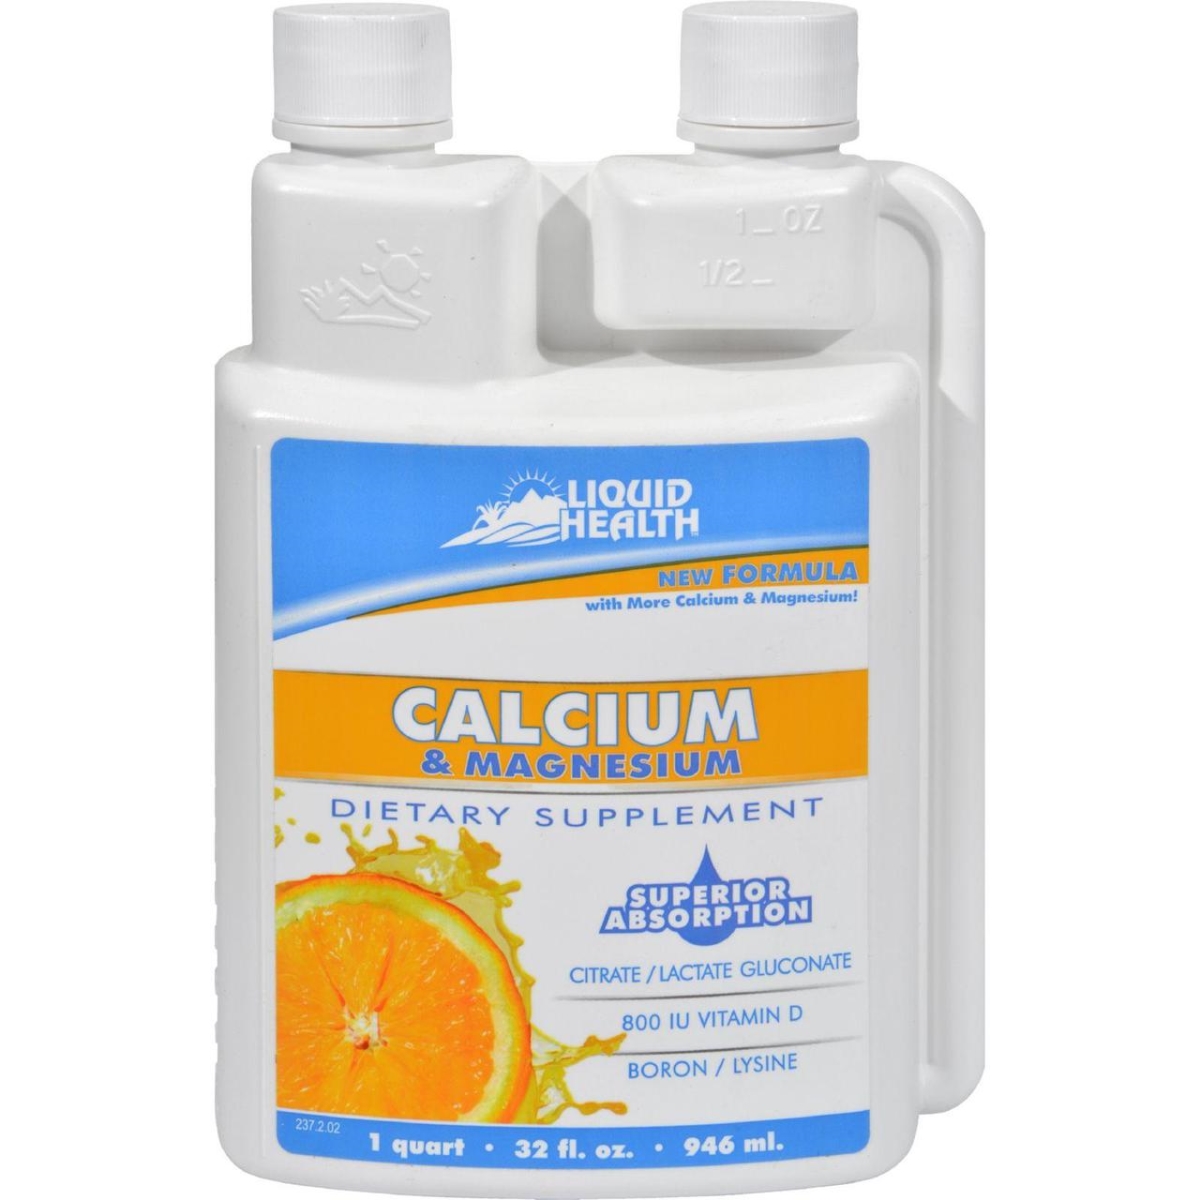 Hg0806711 32 Fl Oz Liquid Health Calcium & Magnesium